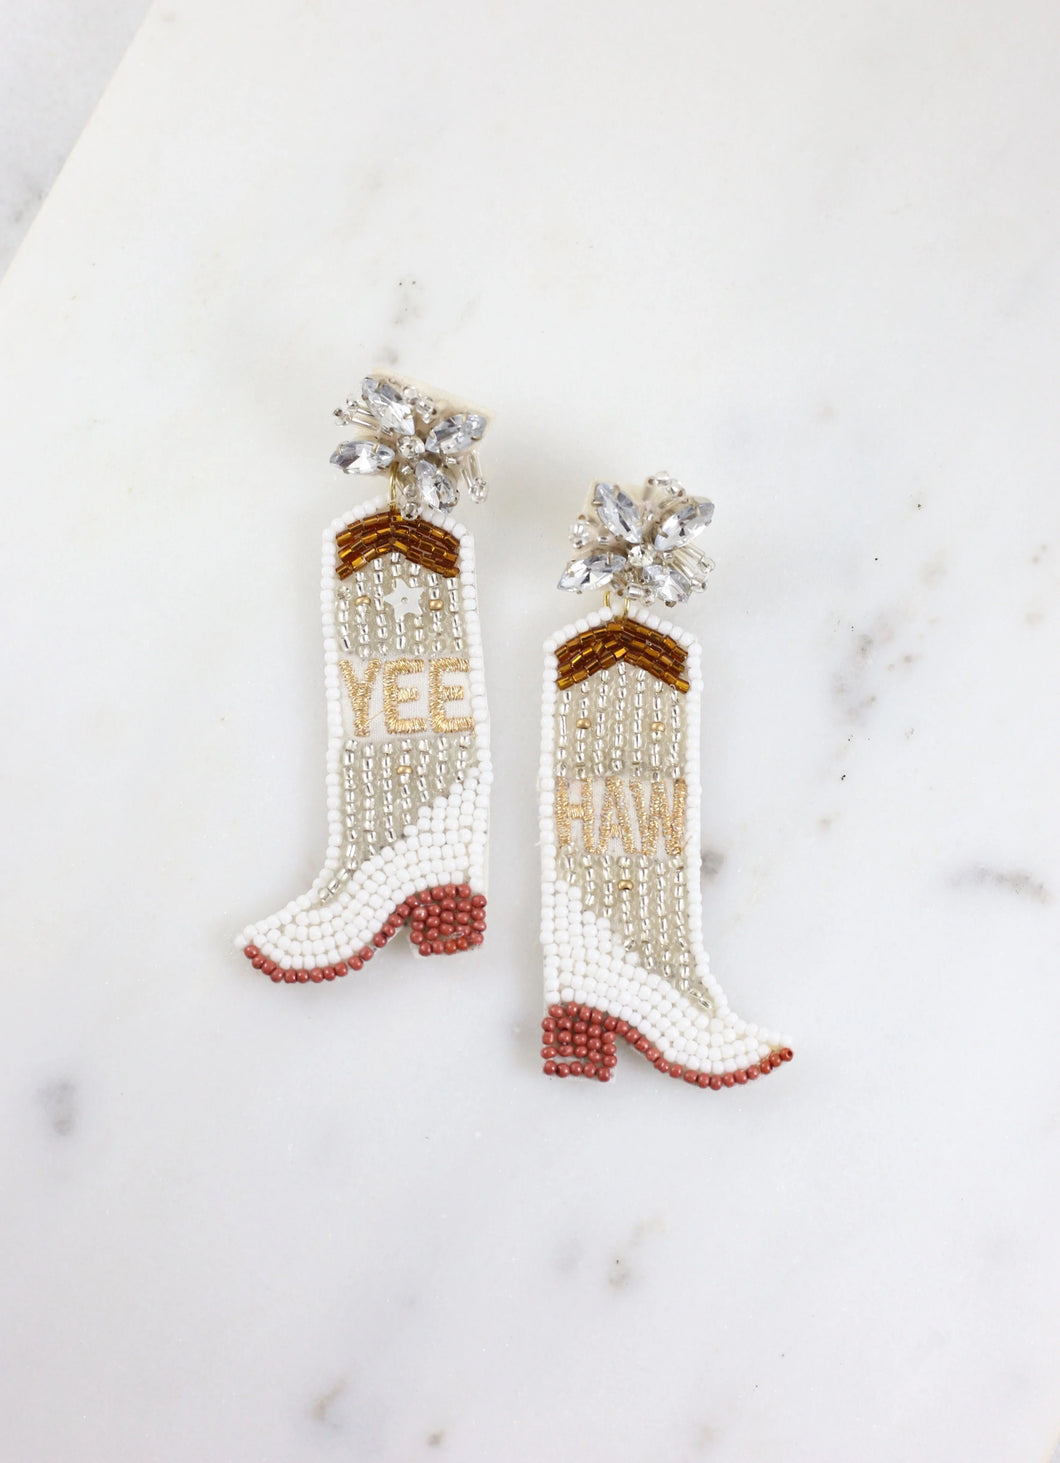 Yee-Haw Boots Beaded Earrings